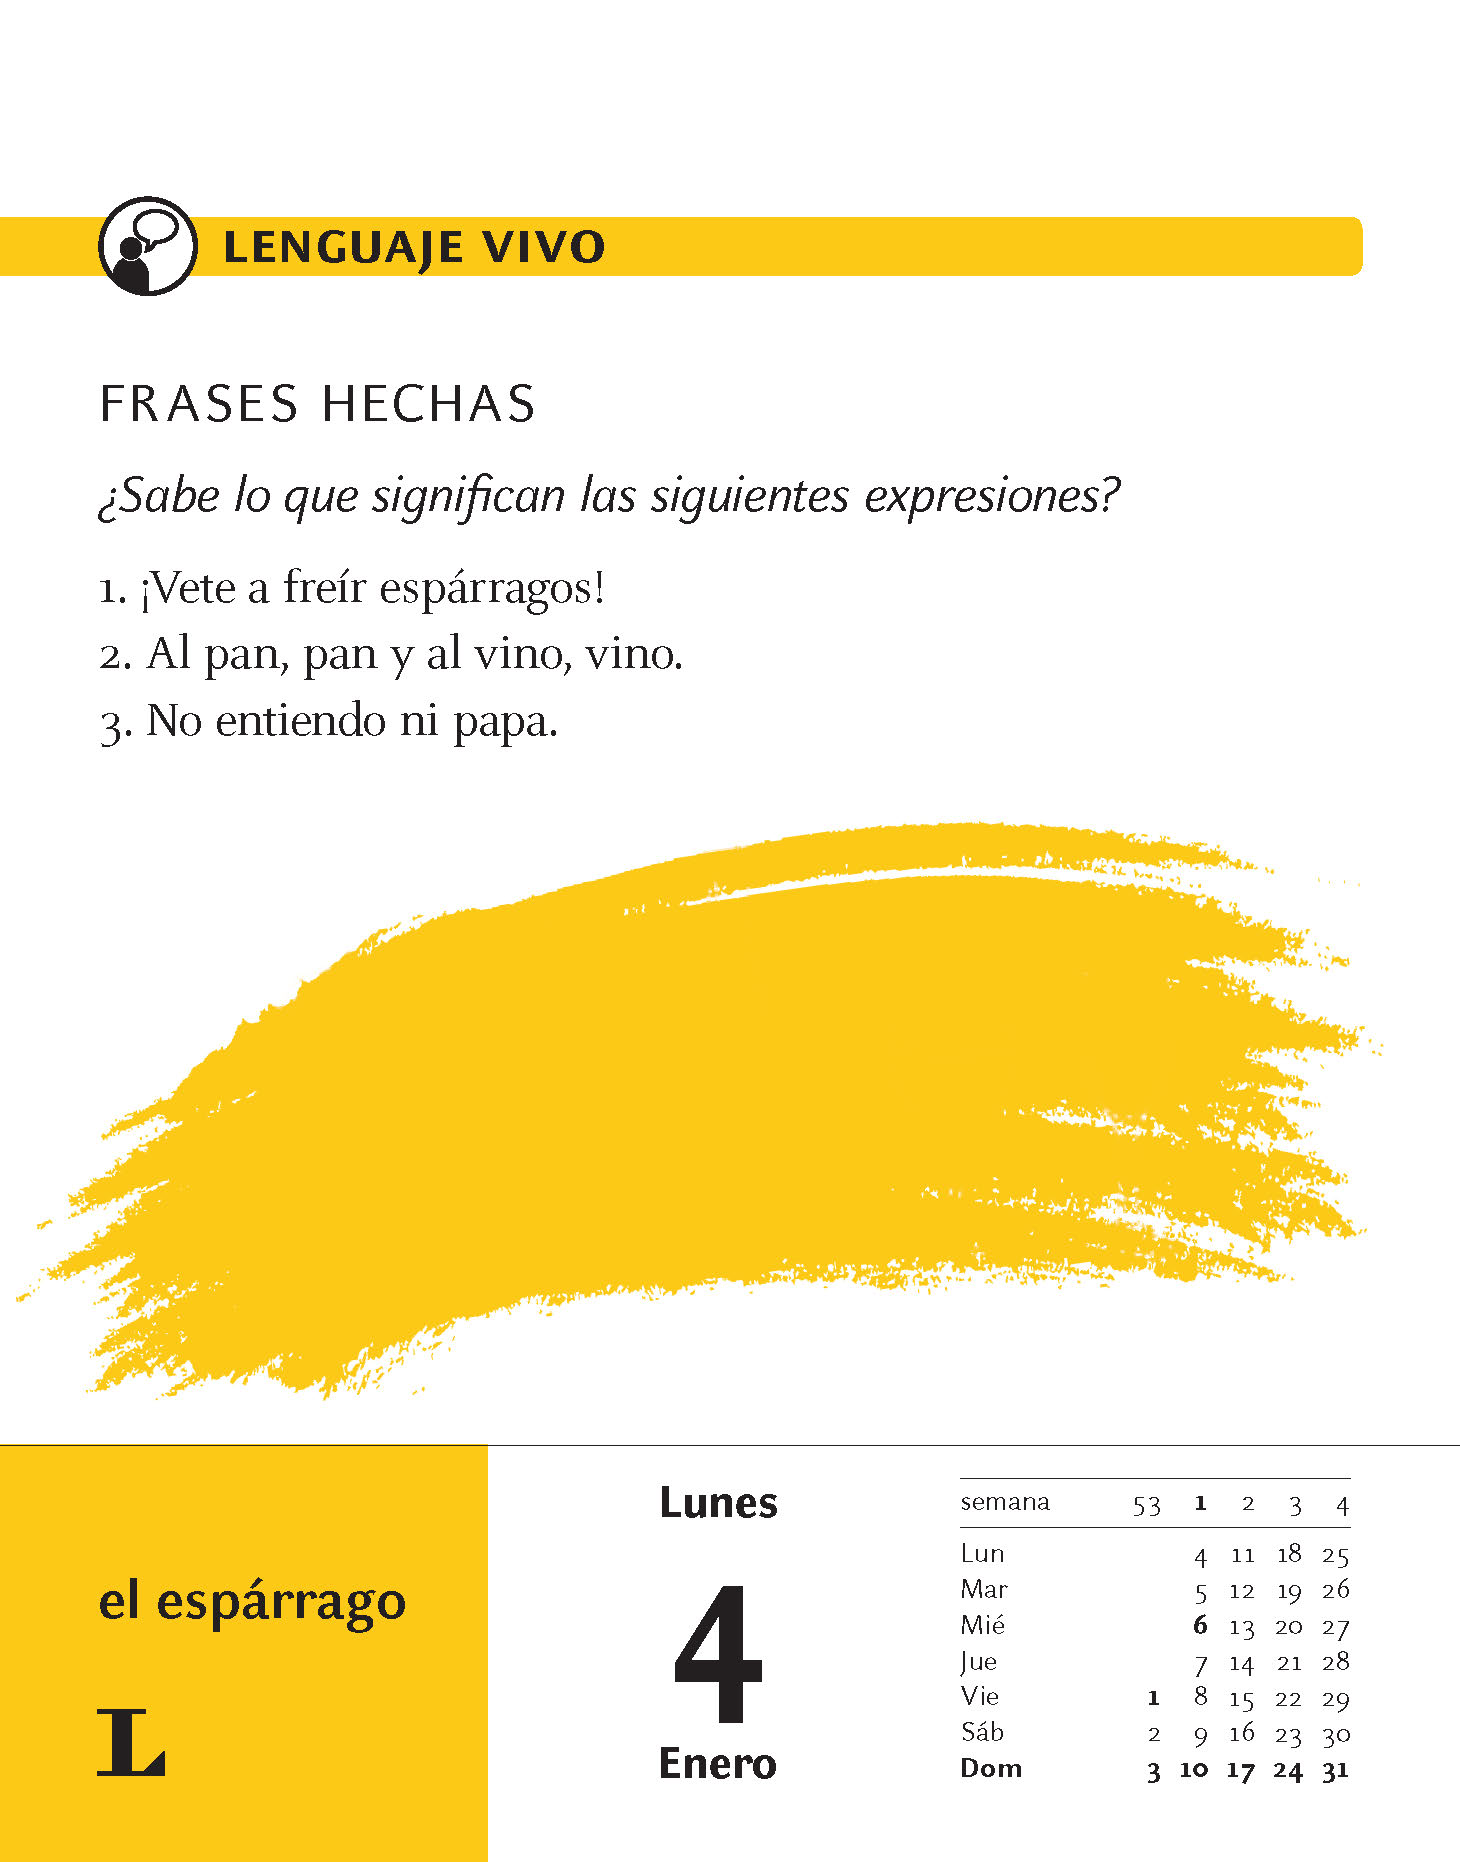 Langenscheidt Sprachkalender Spanisch 2021